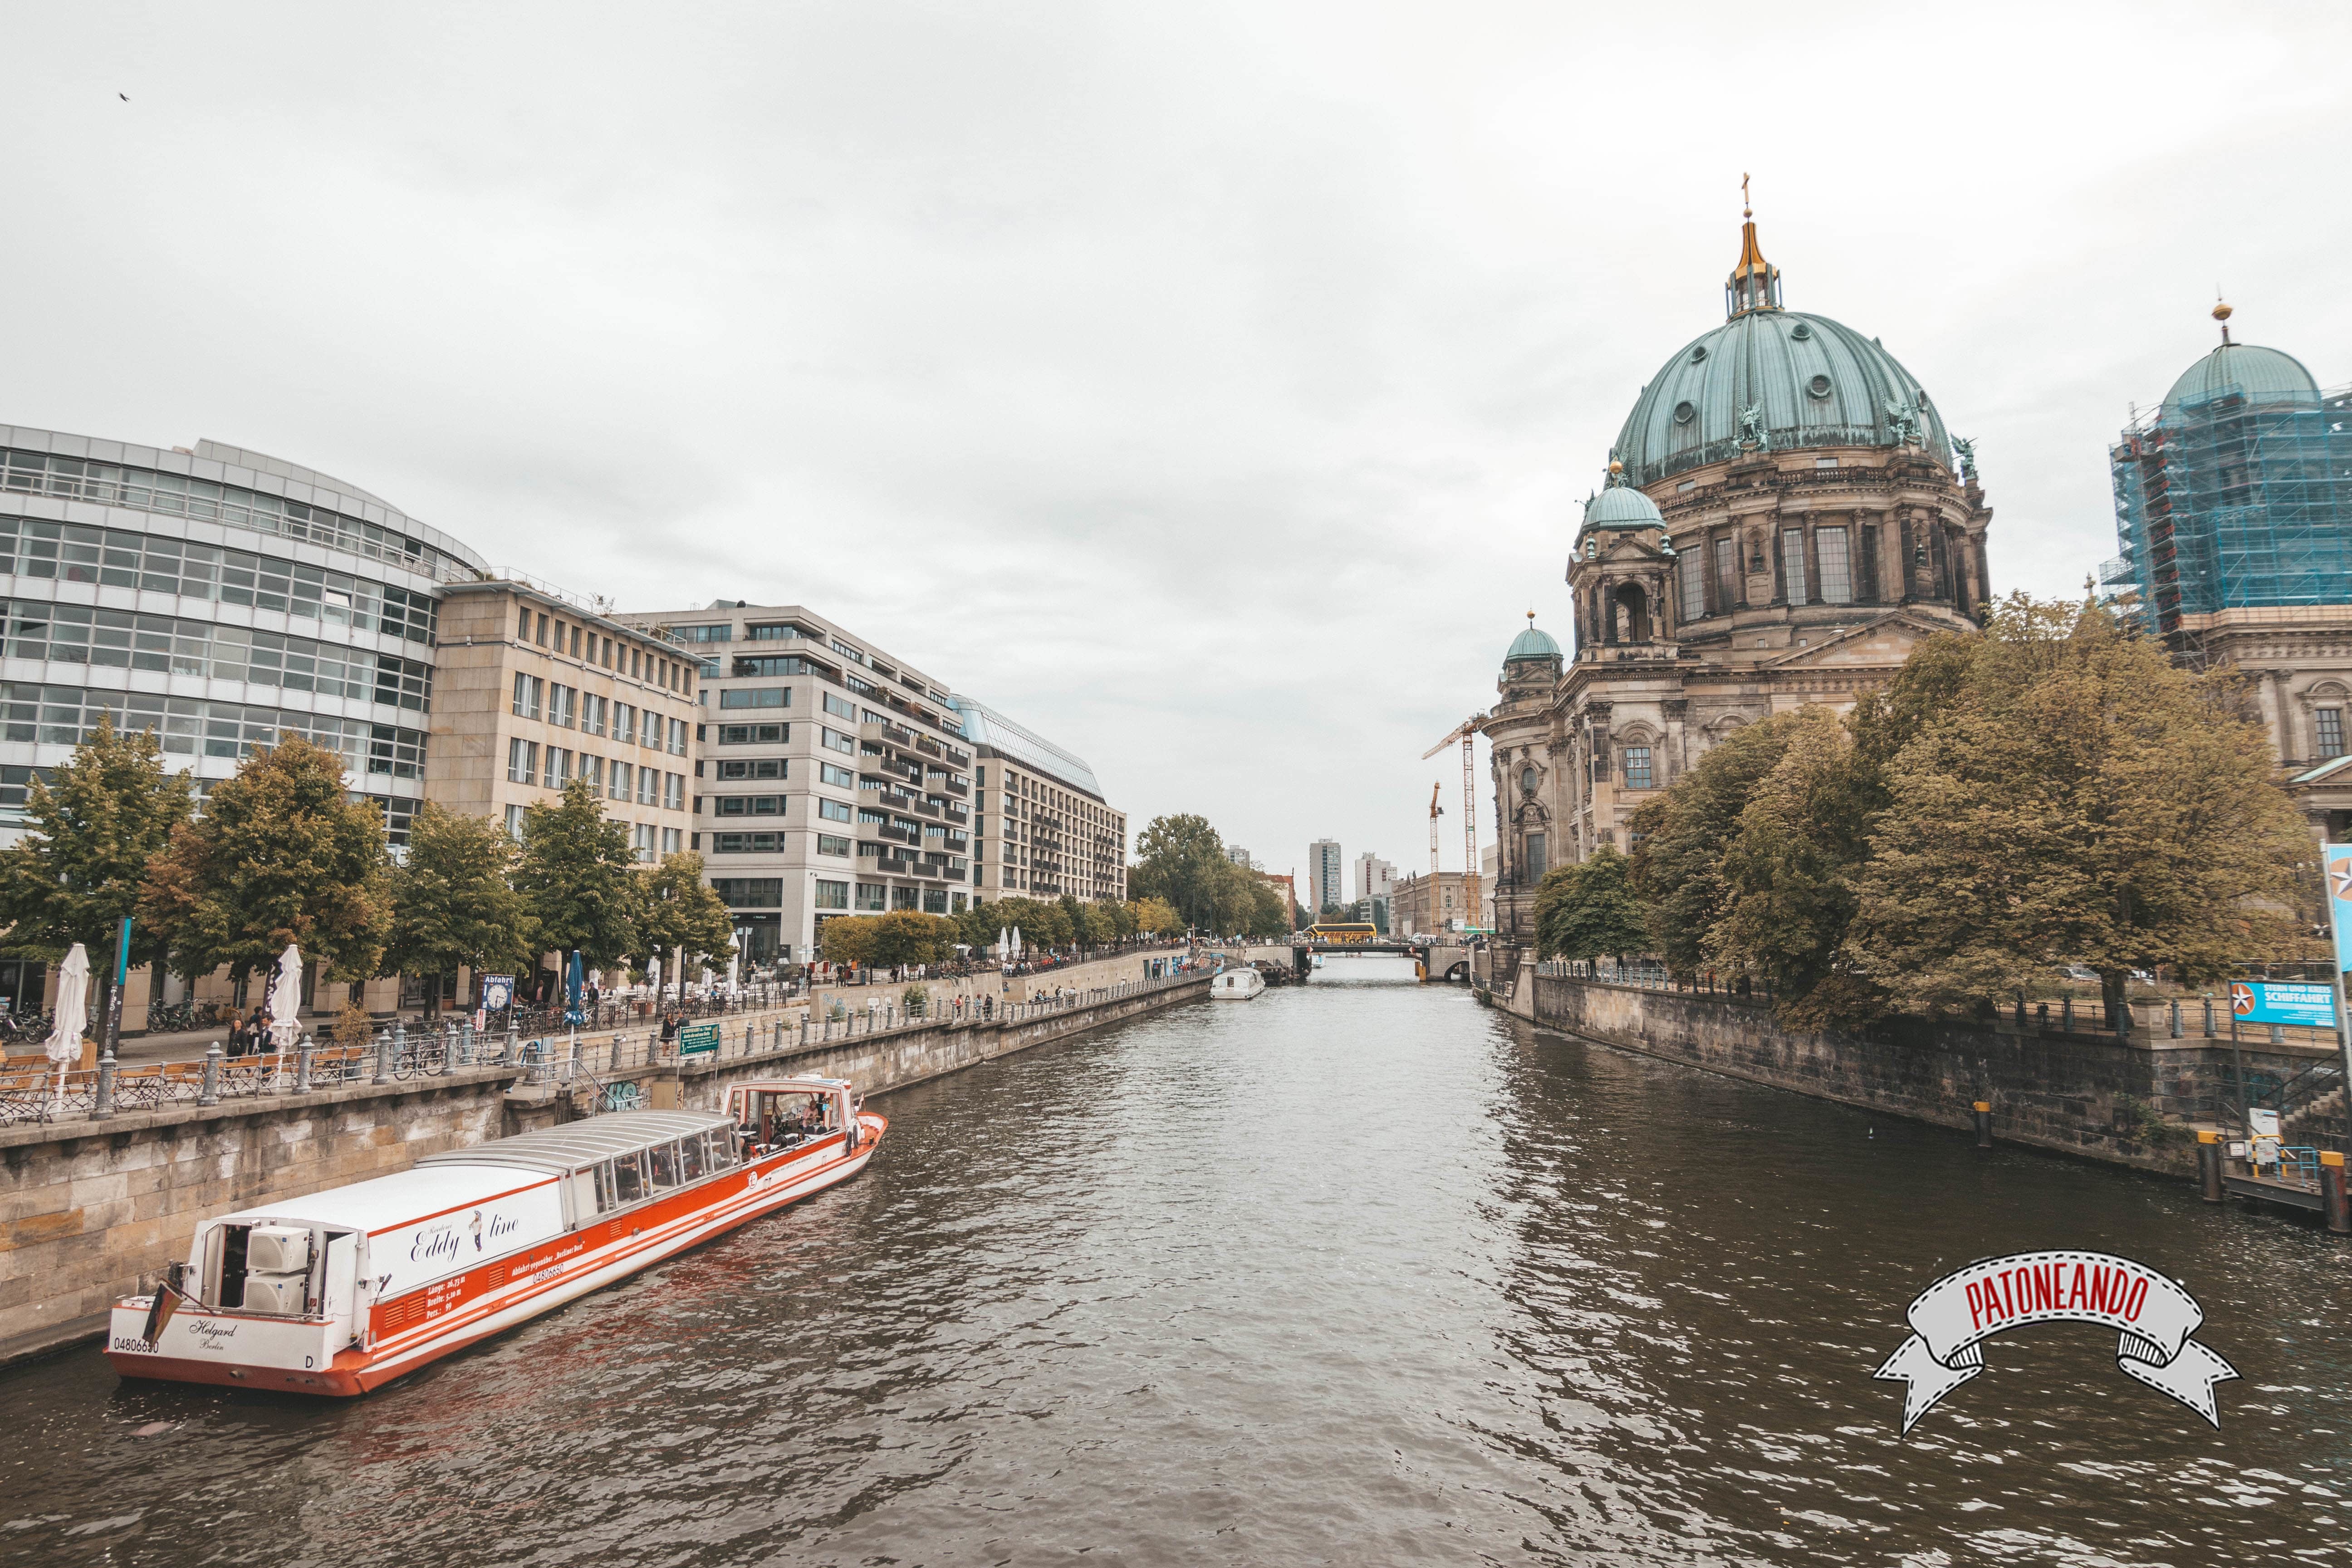 que ver y que hacer en Berlín - Paseo en barco por el río Spree -Patoneando blog de viajes (13)